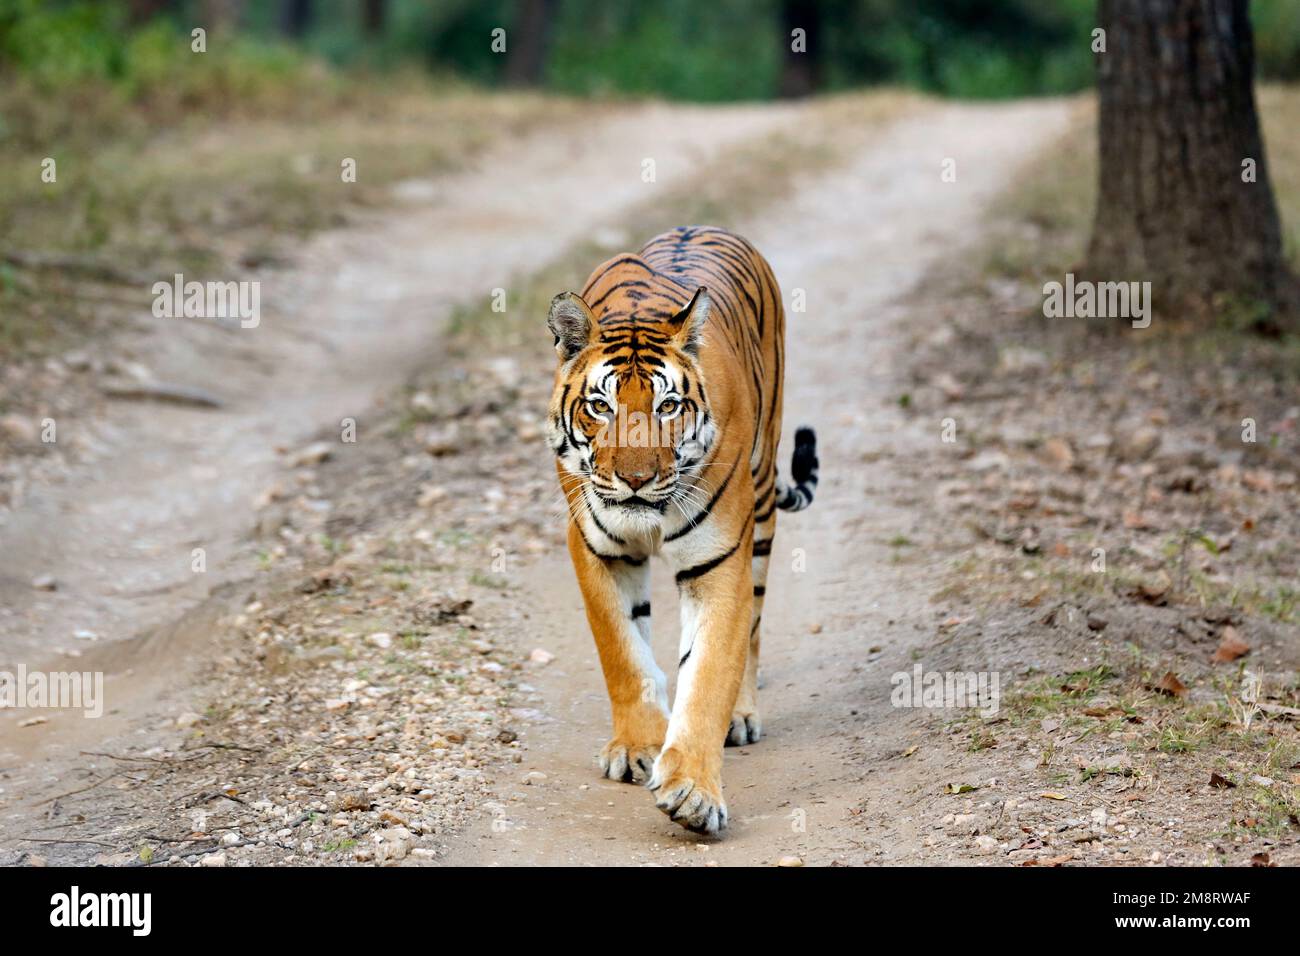 Tigre du Bengale (Panthera tigris tigris) en approche, regardant dans la caméra. Kanha, Inde Banque D'Images